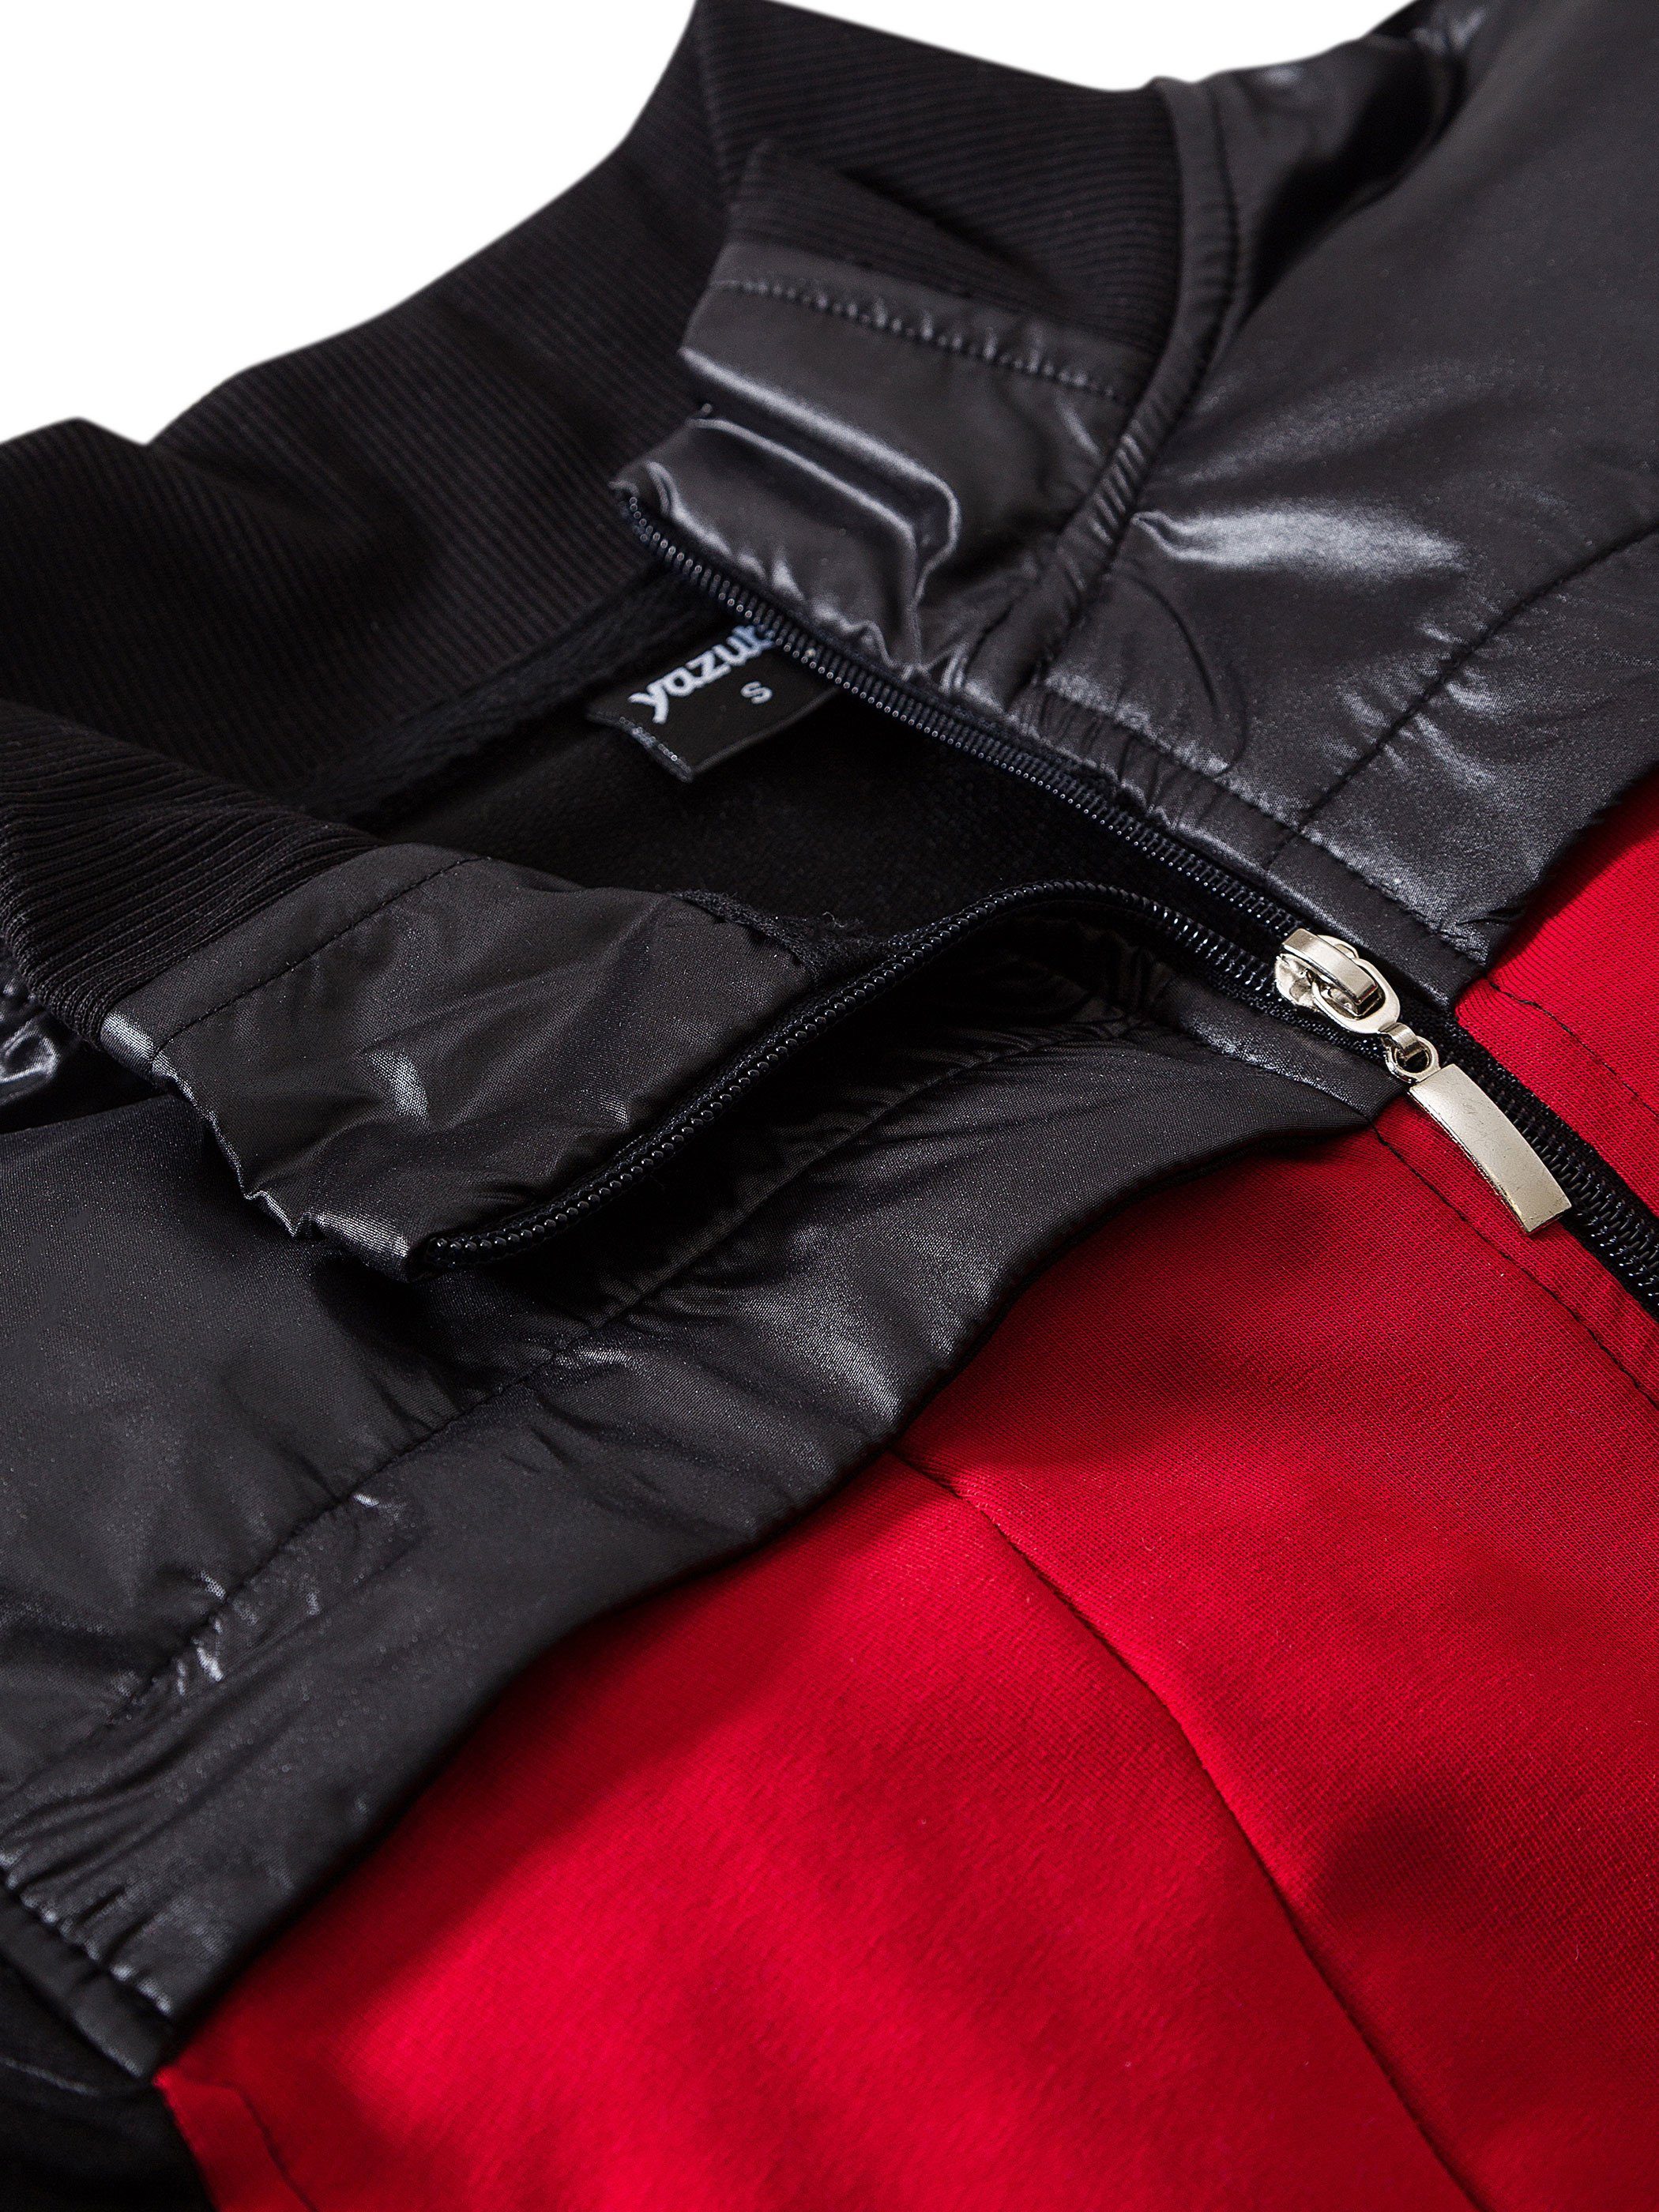 Yazubi Sweatjacke Diego Jacket Mit Reißverschluss / Schwarz rot Black/Red) (